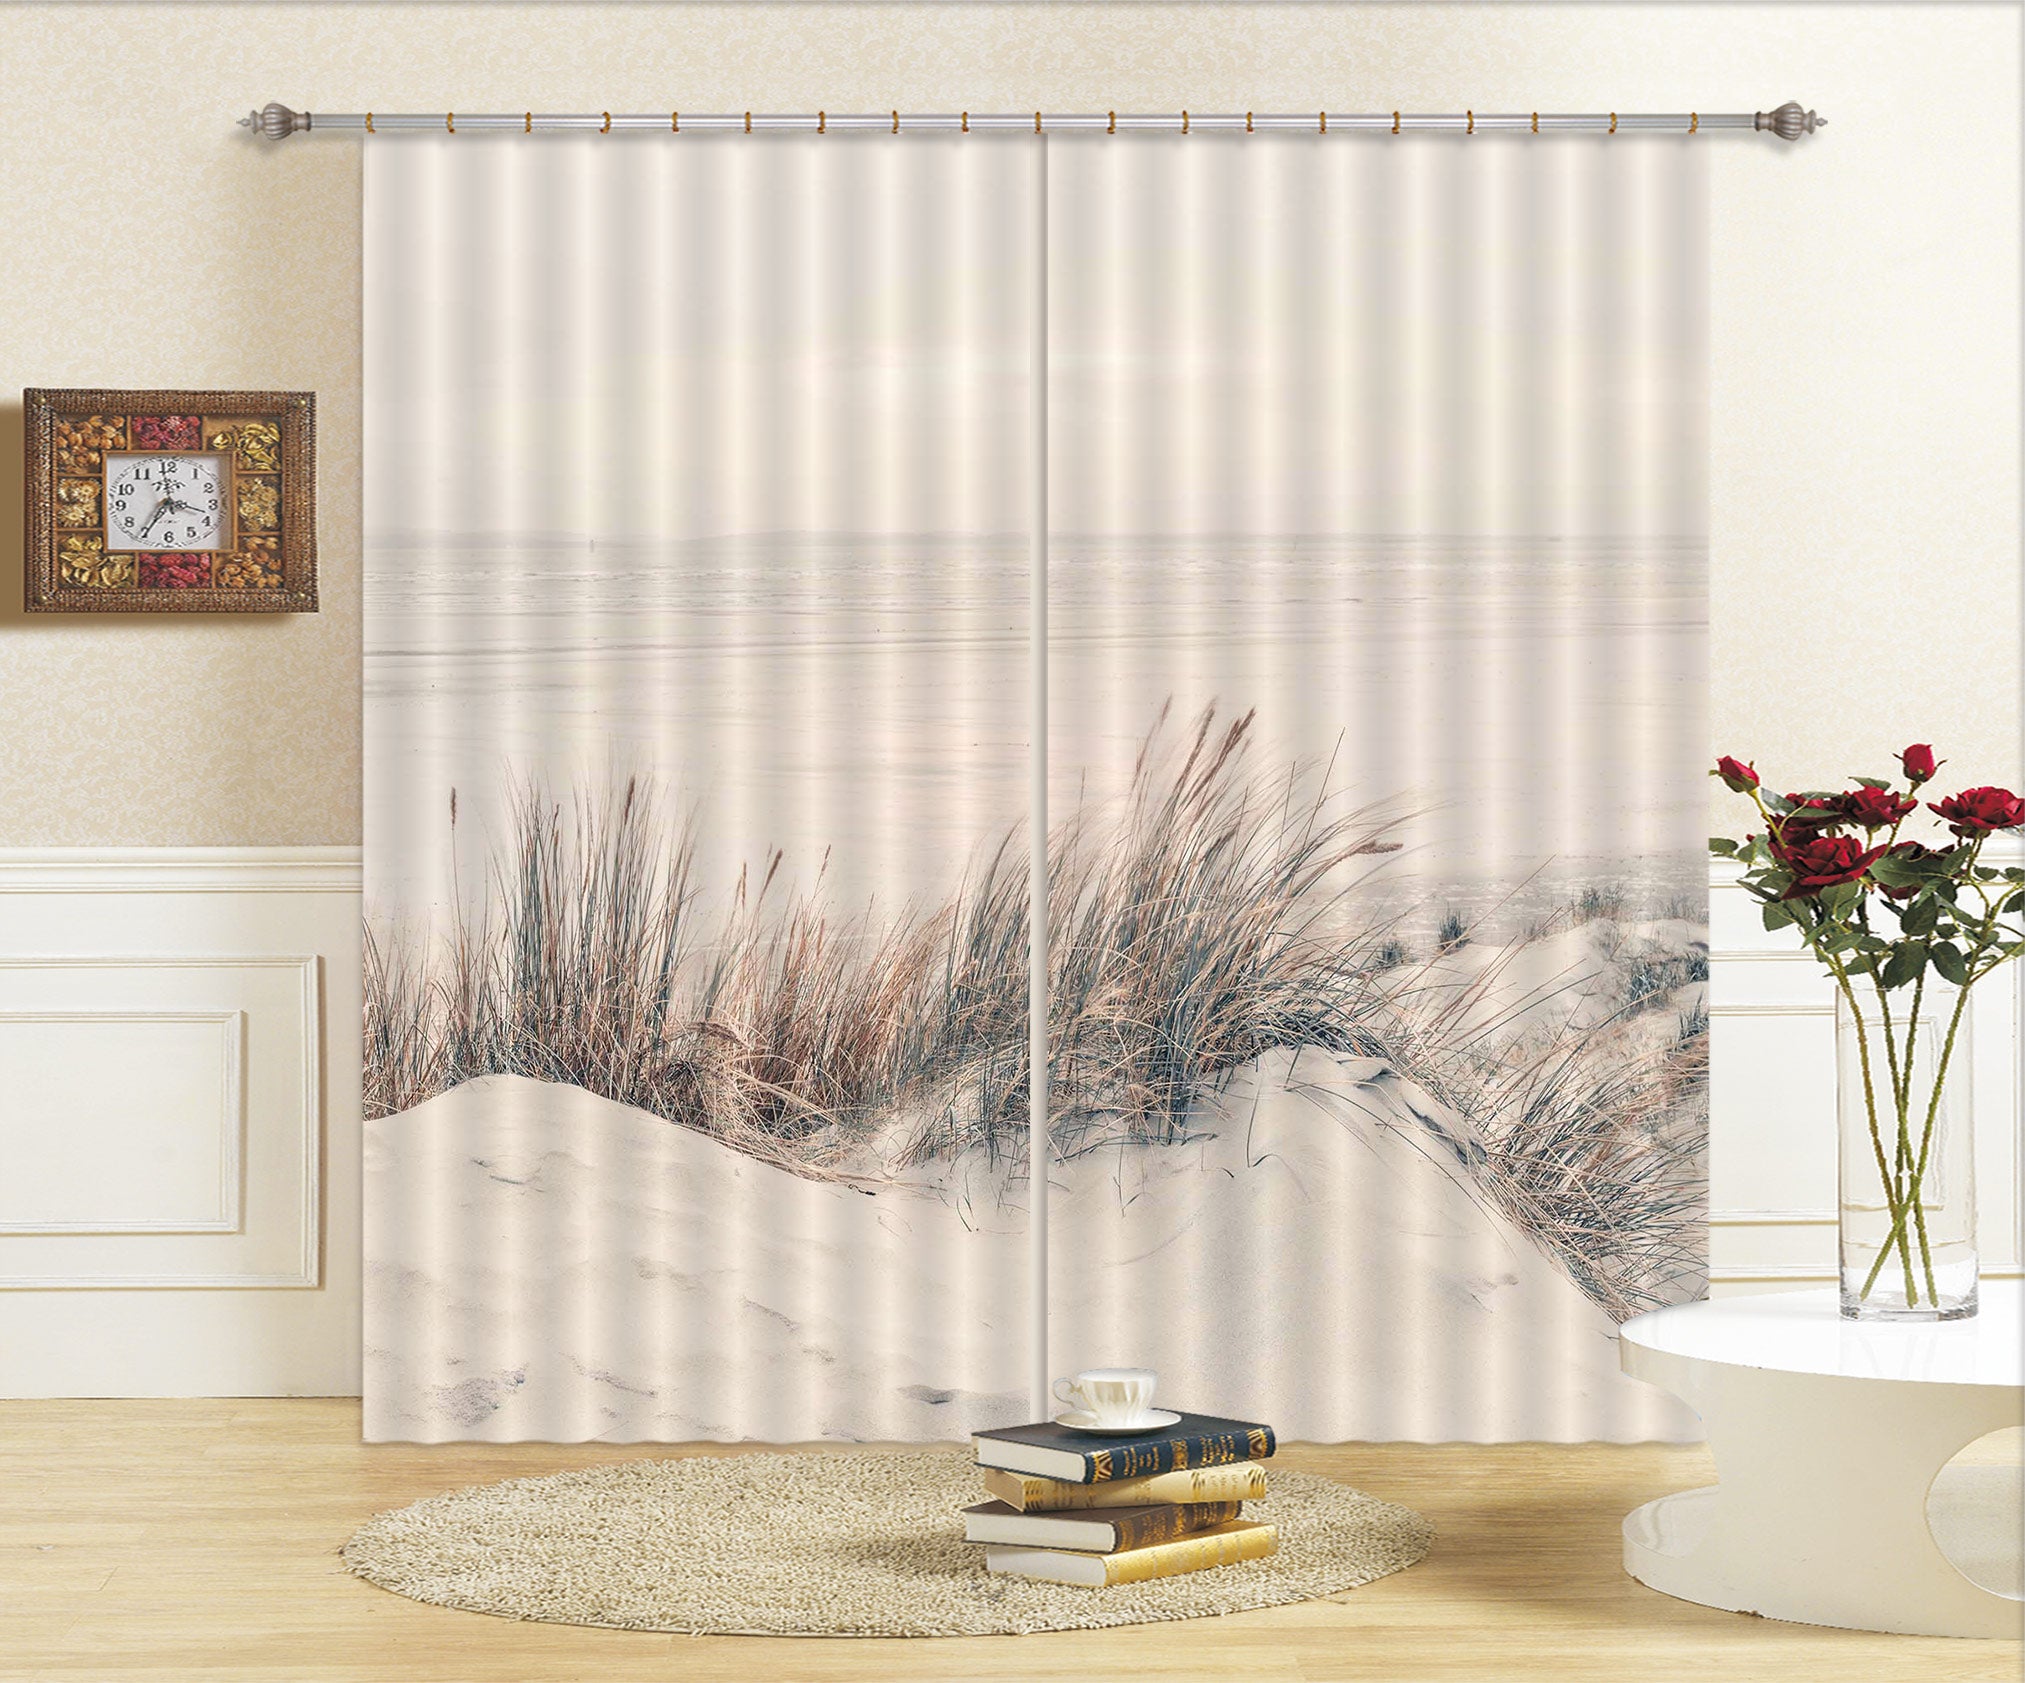 3D Sand Beach 095 Assaf Frank Curtain Curtains Drapes